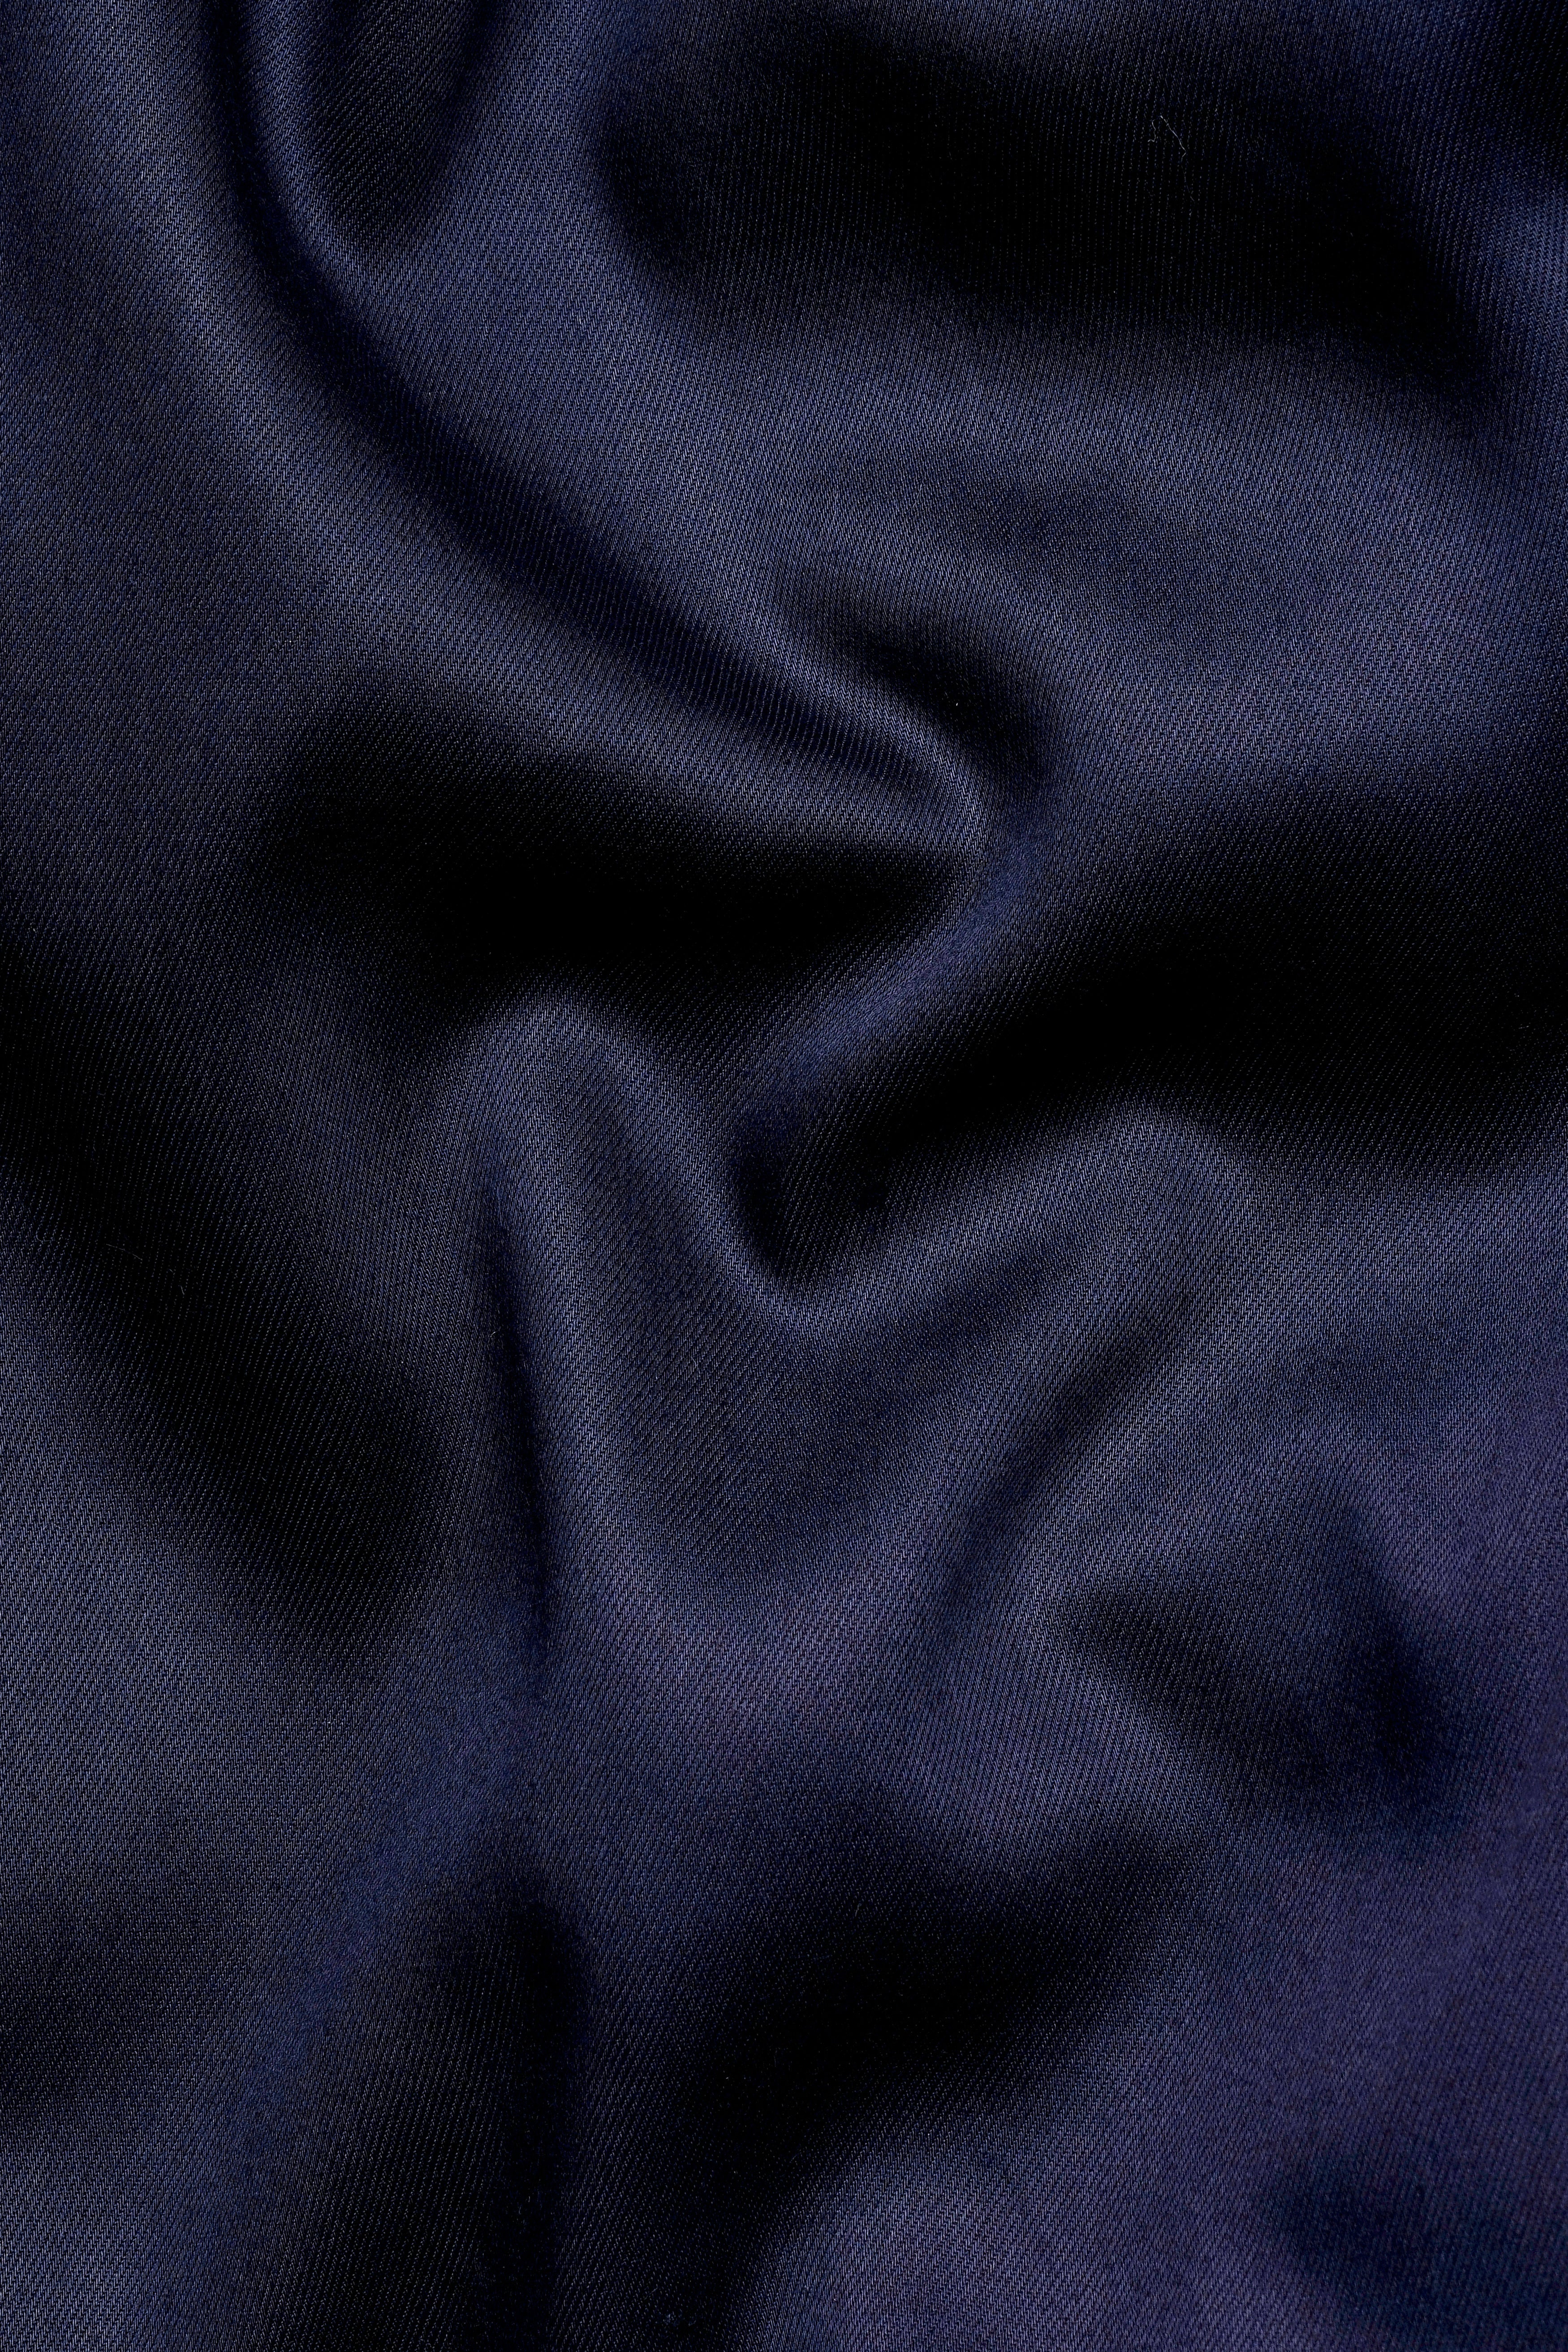 Ebony Clay Blue Wool Rich Waistcoat V3062-36, V3062-38, V3062-40, V3062-42, V3062-44, V3062-46, V3062-48, V3062-50, V3062-62, V3062-54, V3062-56, V3062-58, V3062-60